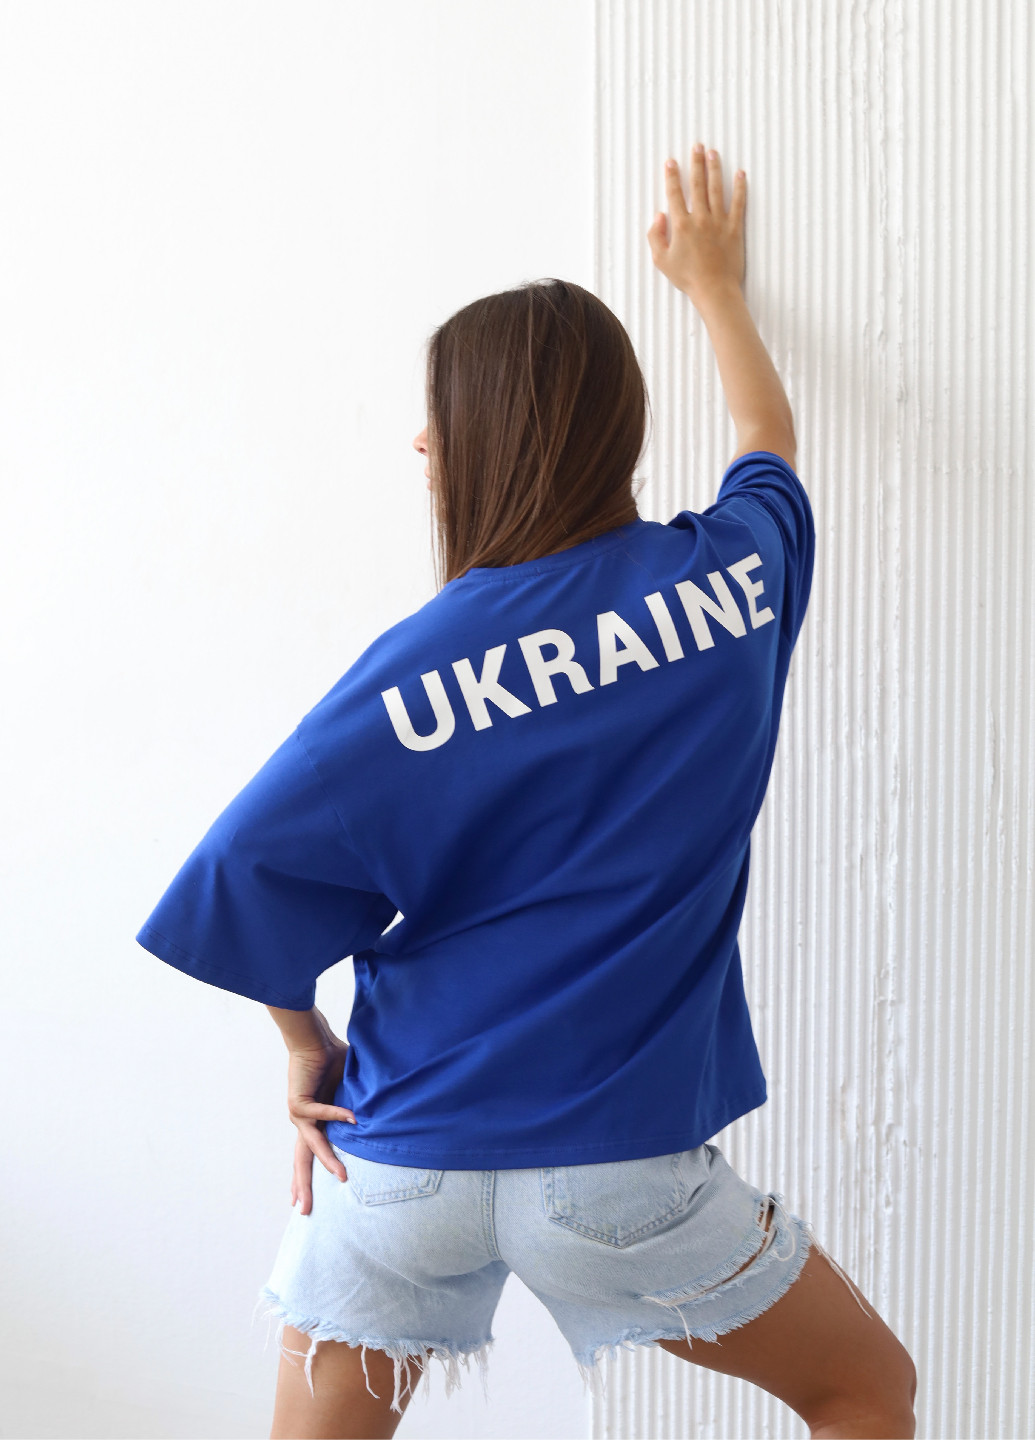 Синяя всесезон футболка "ukraine" синего цвета Rebellis